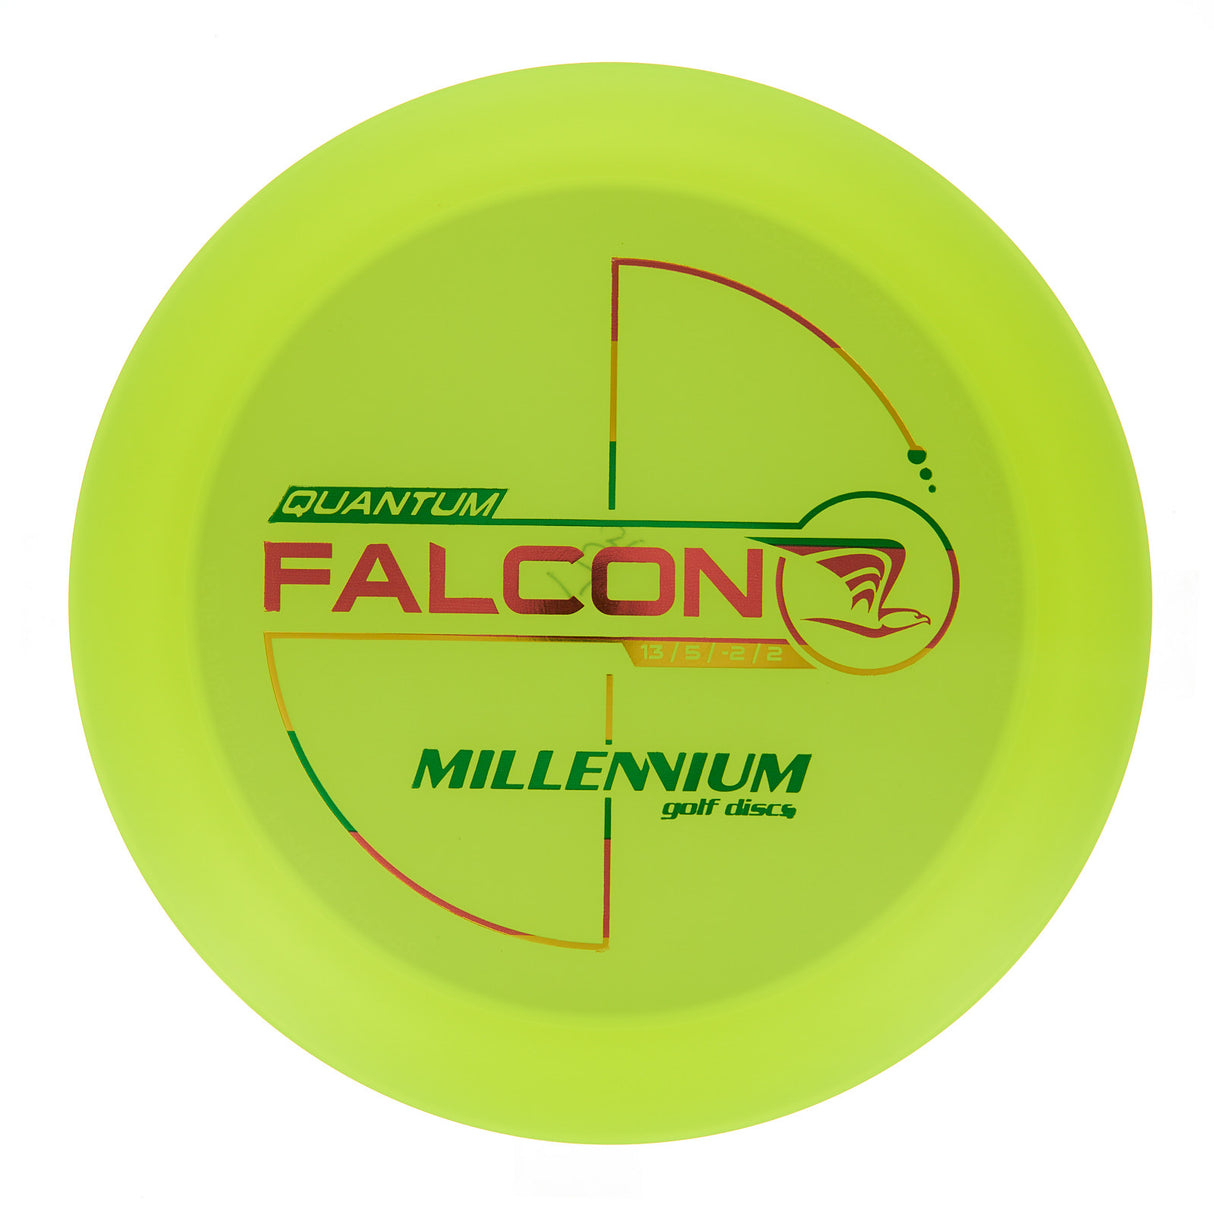 Millennium Falcon - Quantum 176g | Style 0001